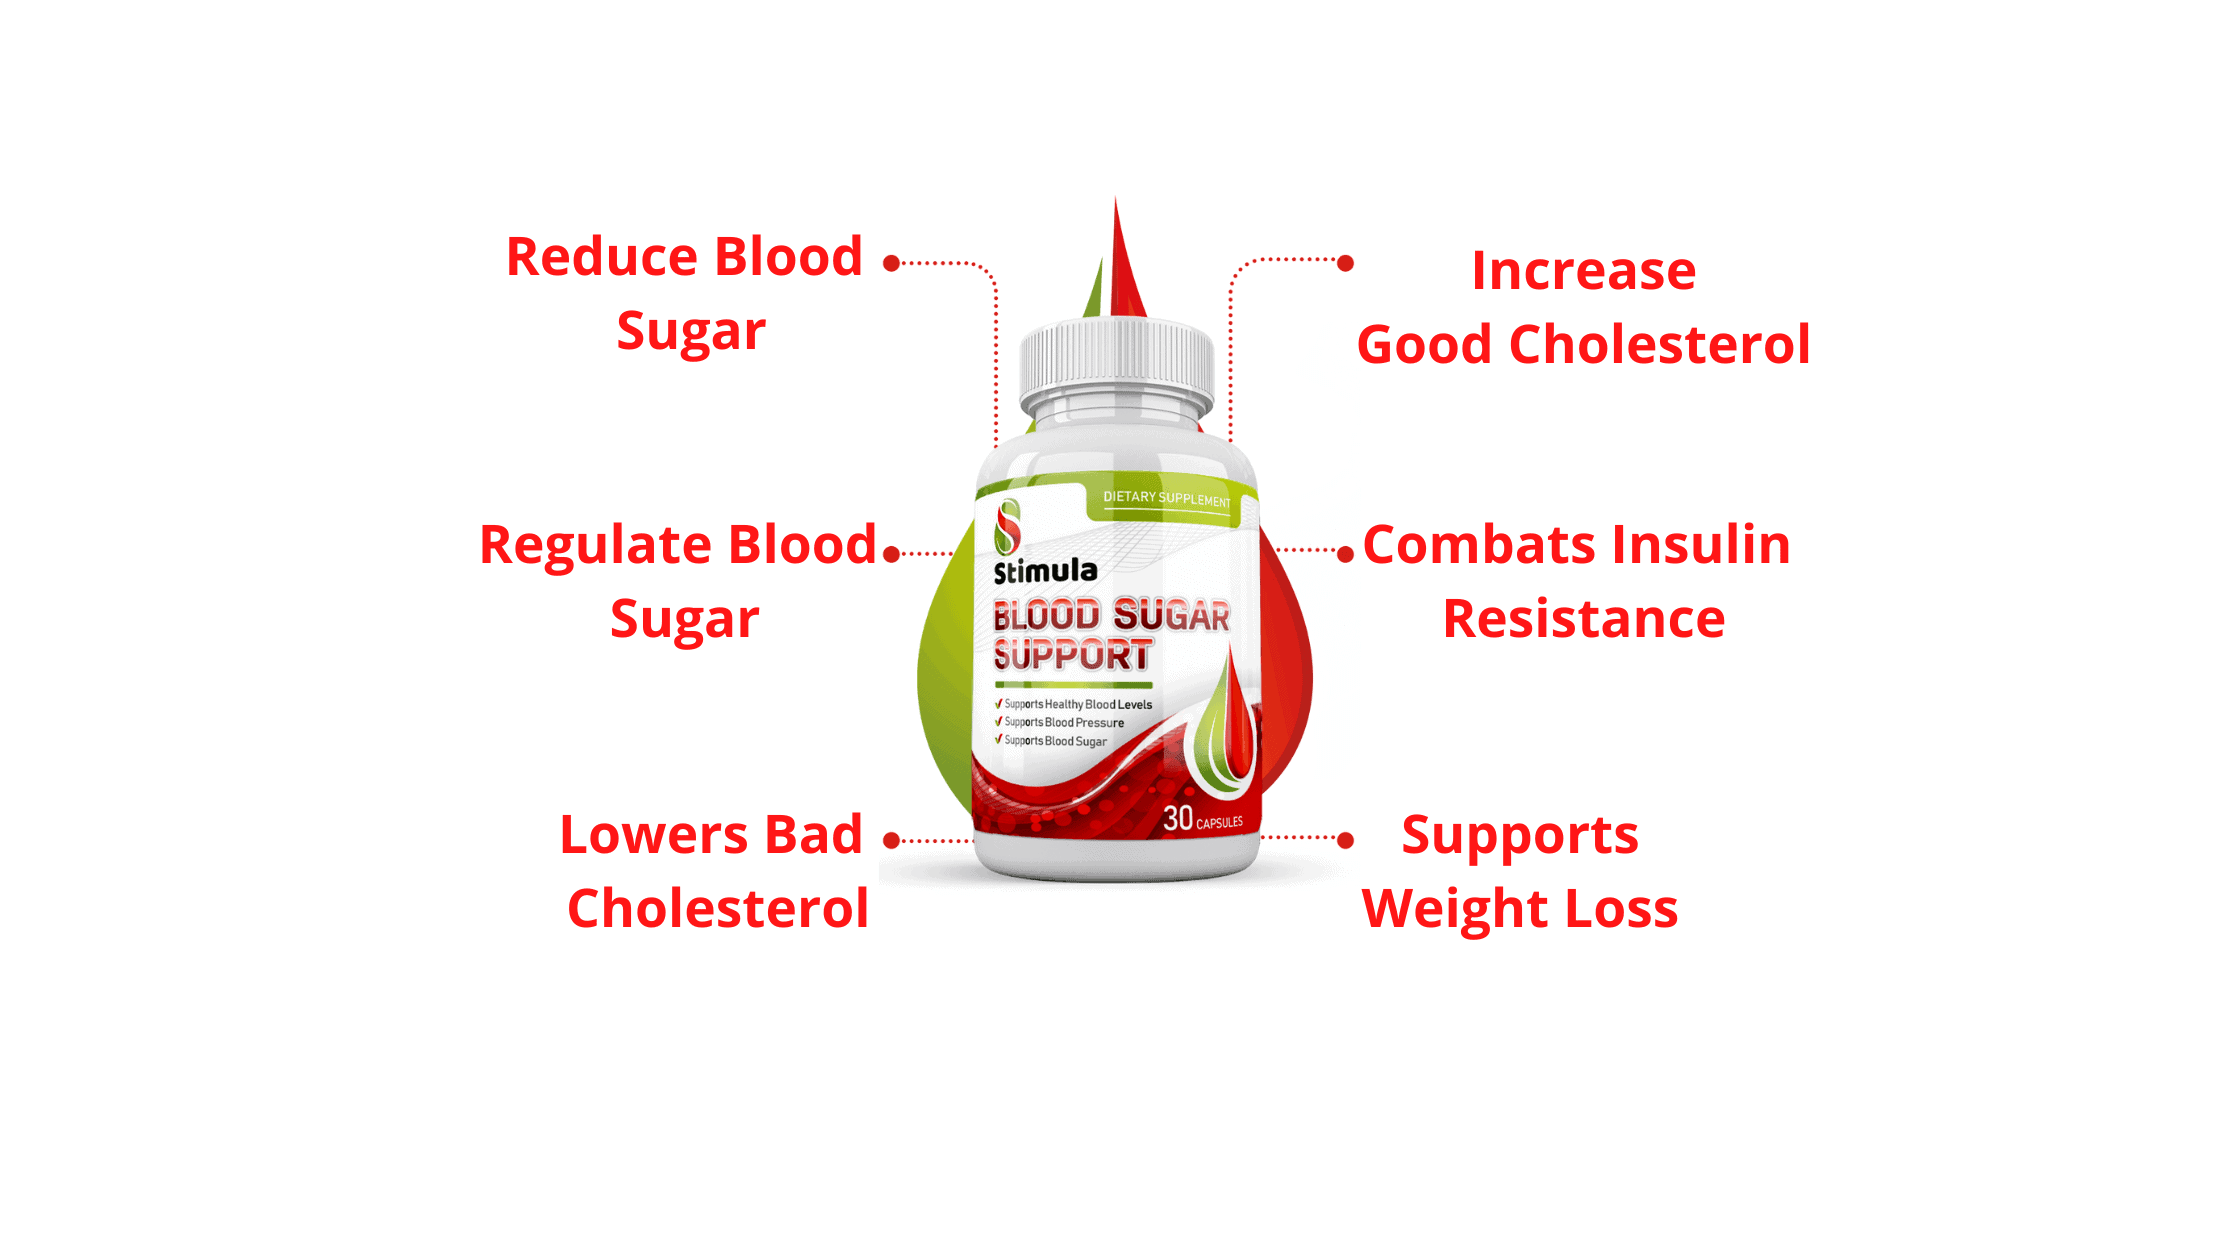 Stimula Blood Sugar Support  Benefits